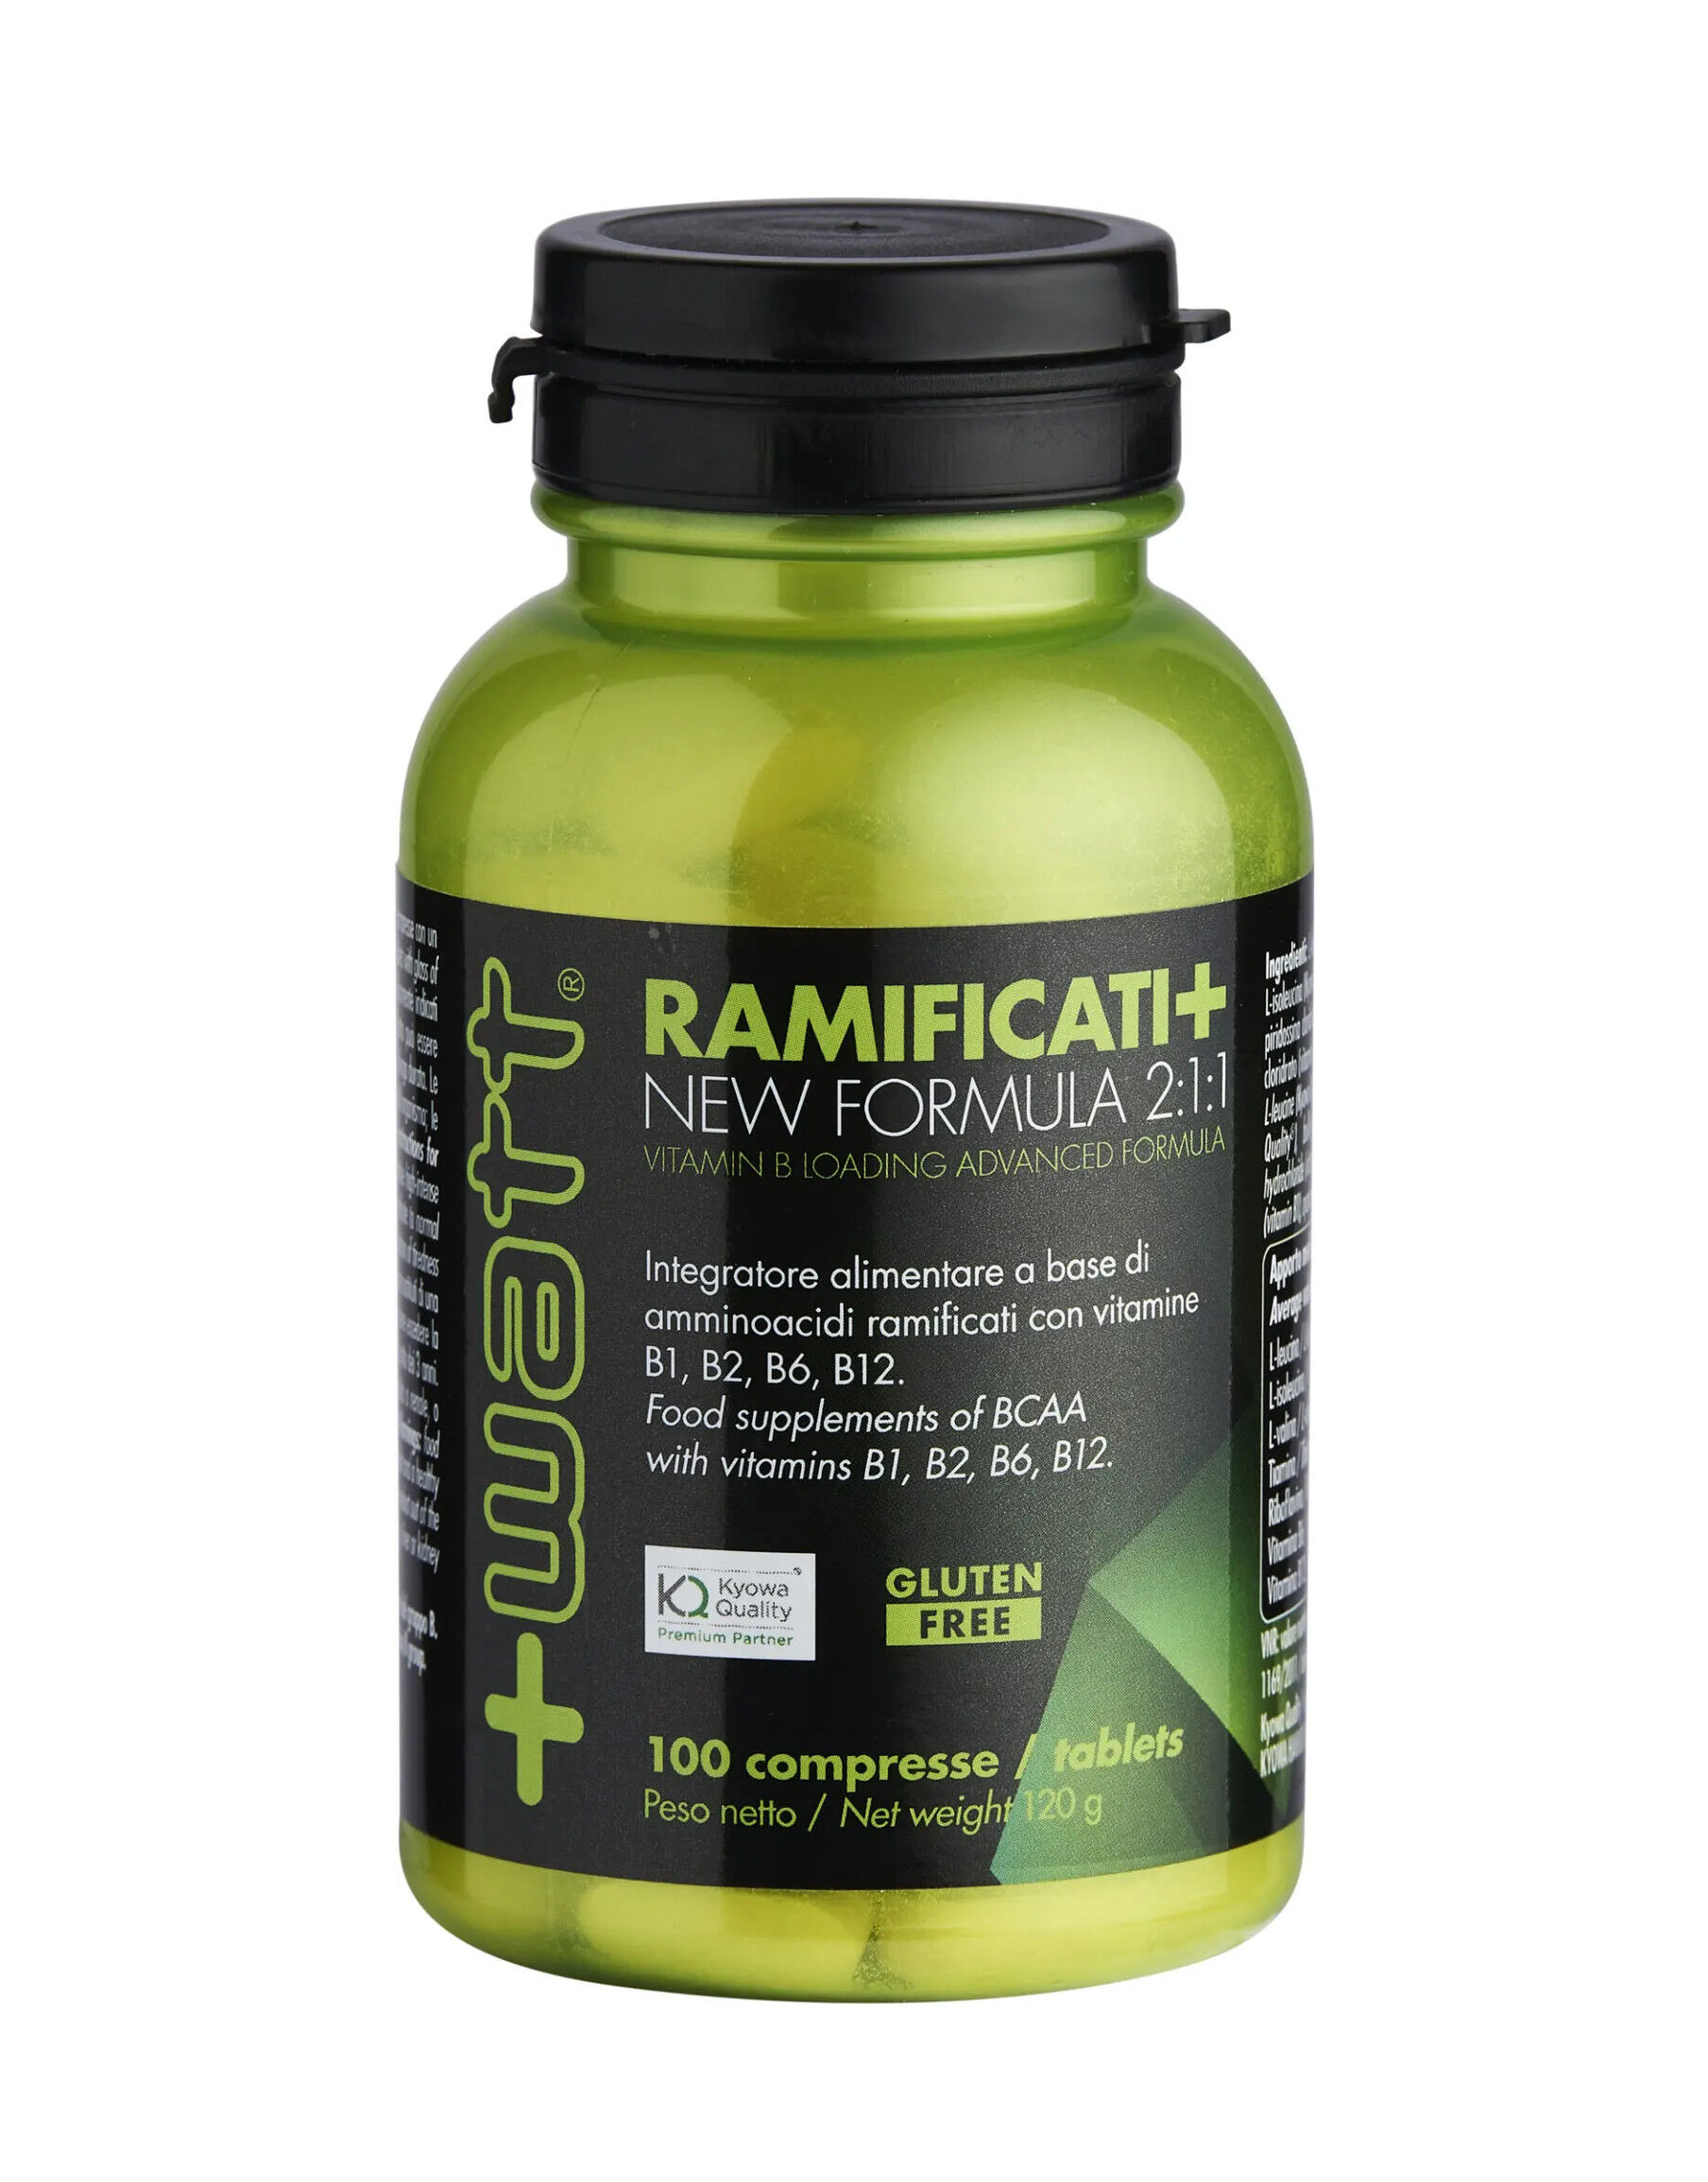 +watt ramificati+ vitamin b loading advanced formula 100 compresse